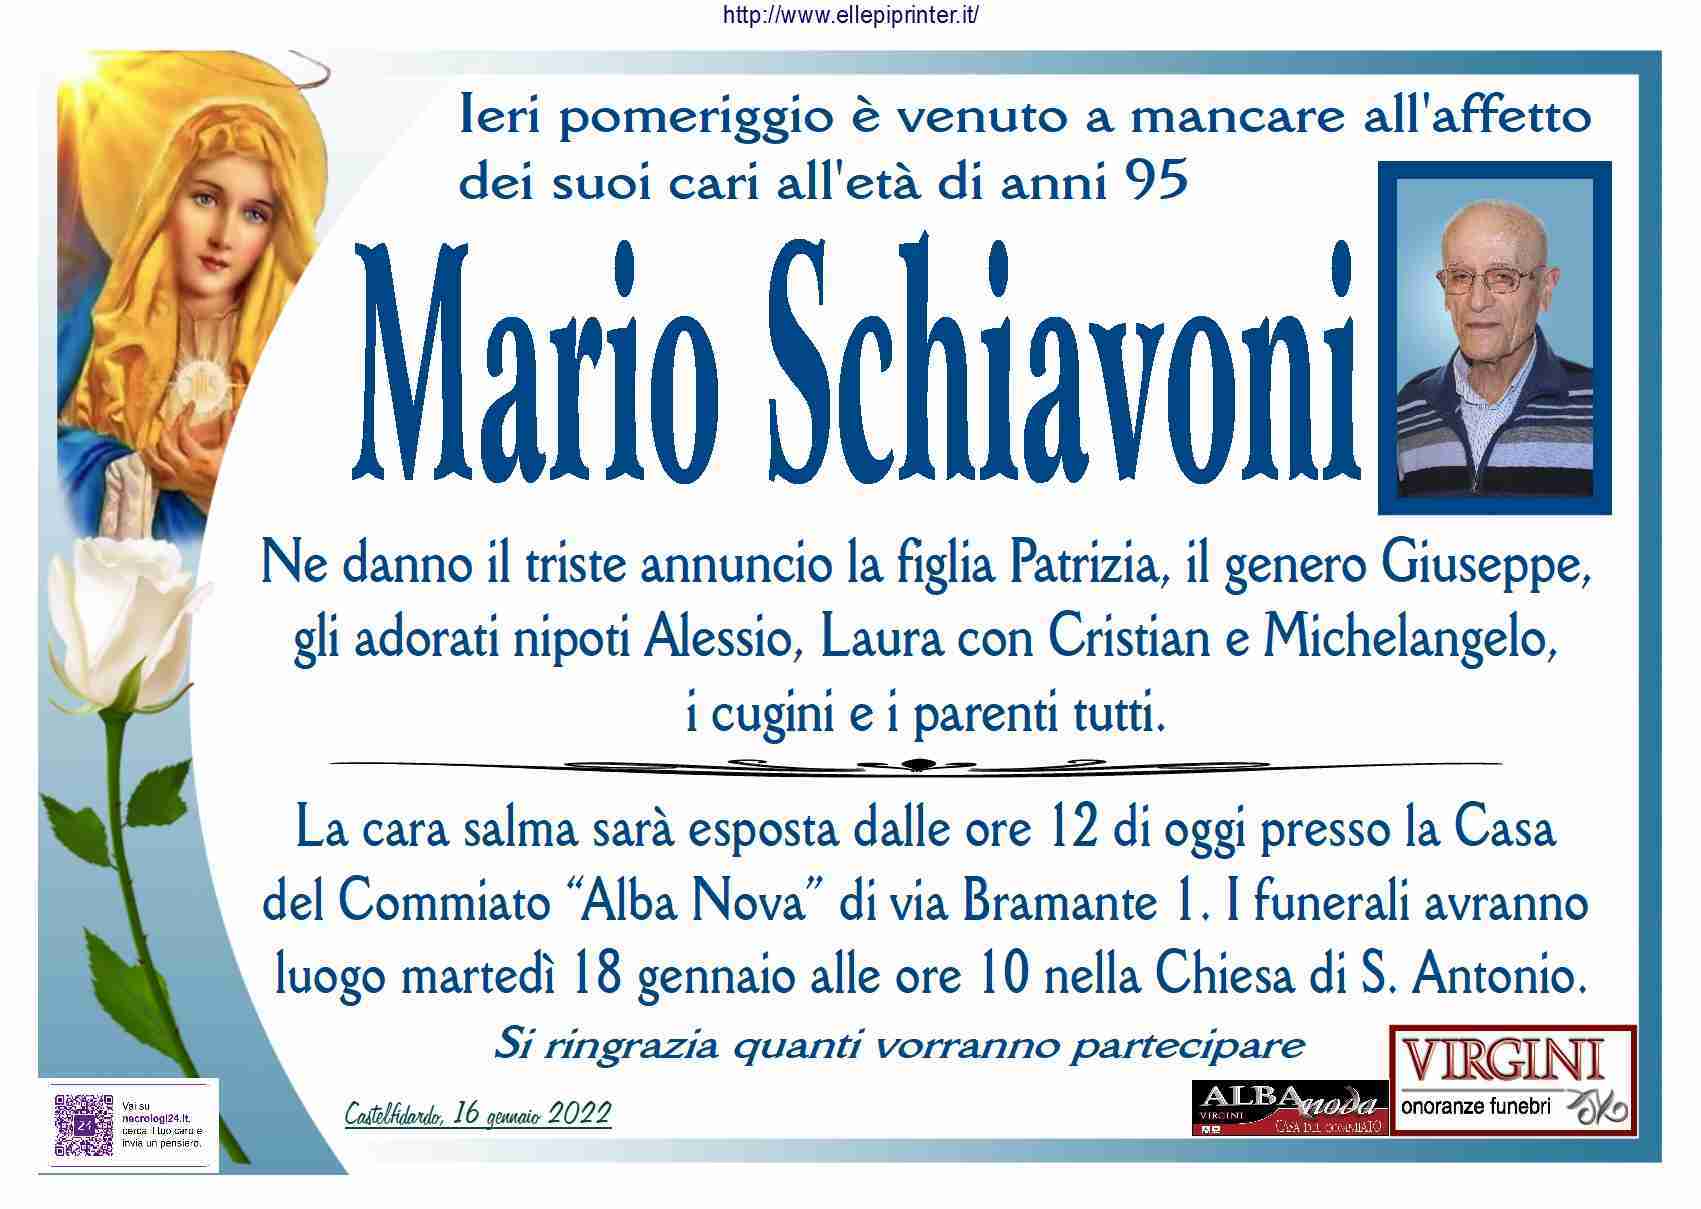 Mario Schiavoni